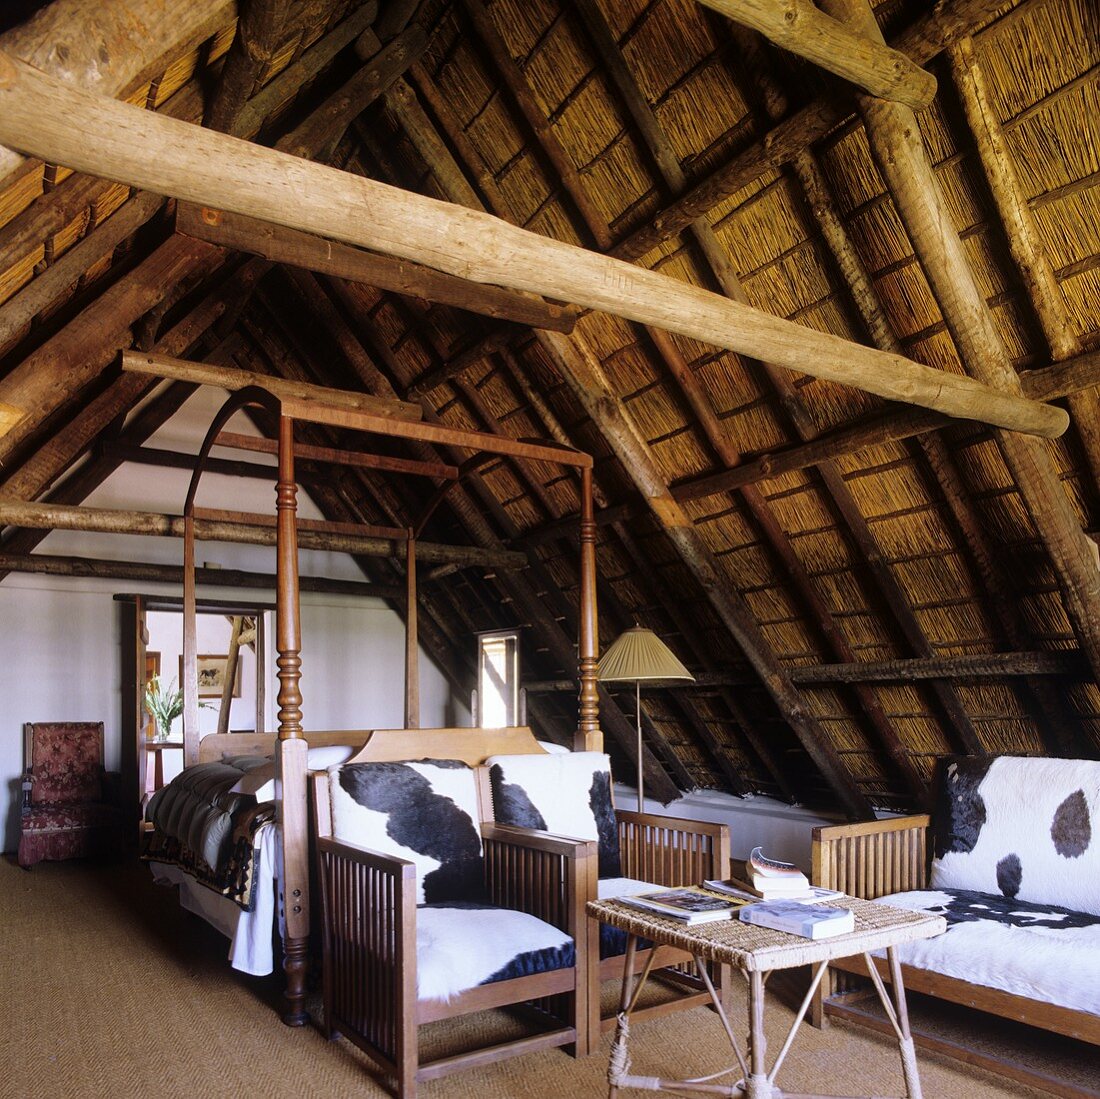 Schlafraum mit Holzstühlen und Fellbezug unter Dachstuhl mit Strohbelag im südafrikanischen Landhaus